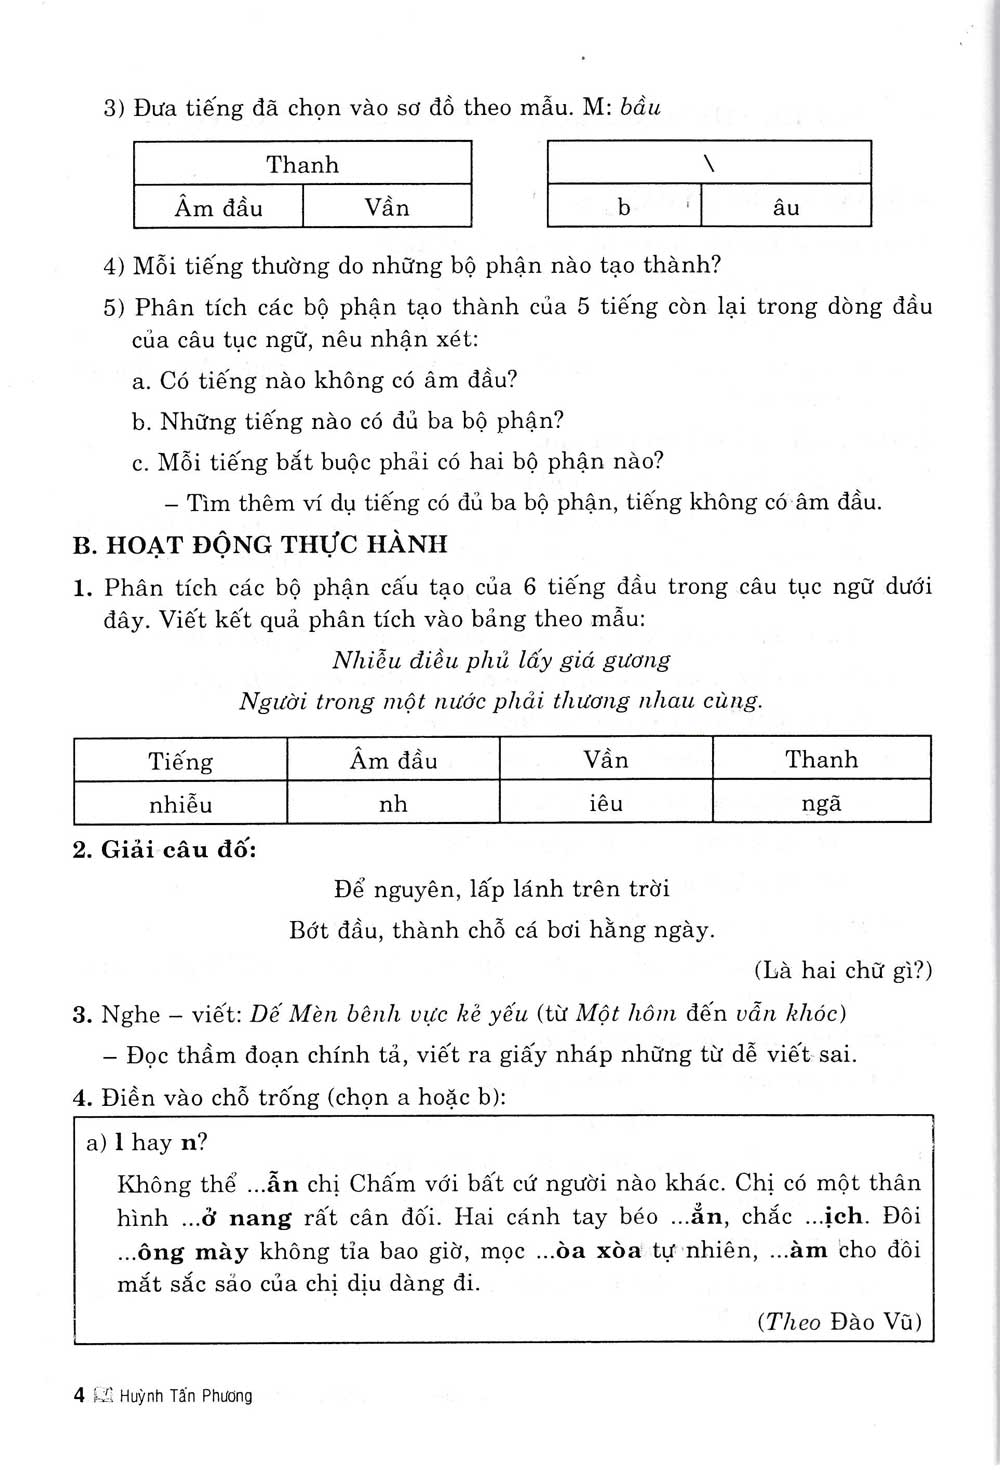 Các phương pháp dạy học Tiếng Việt ở Tiểu học